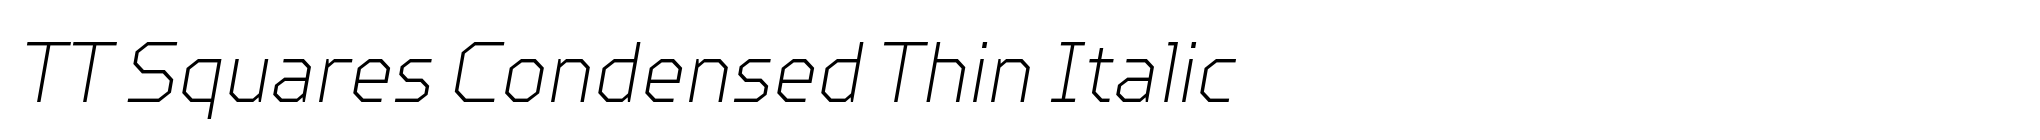 TT Squares Condensed Thin Italic image